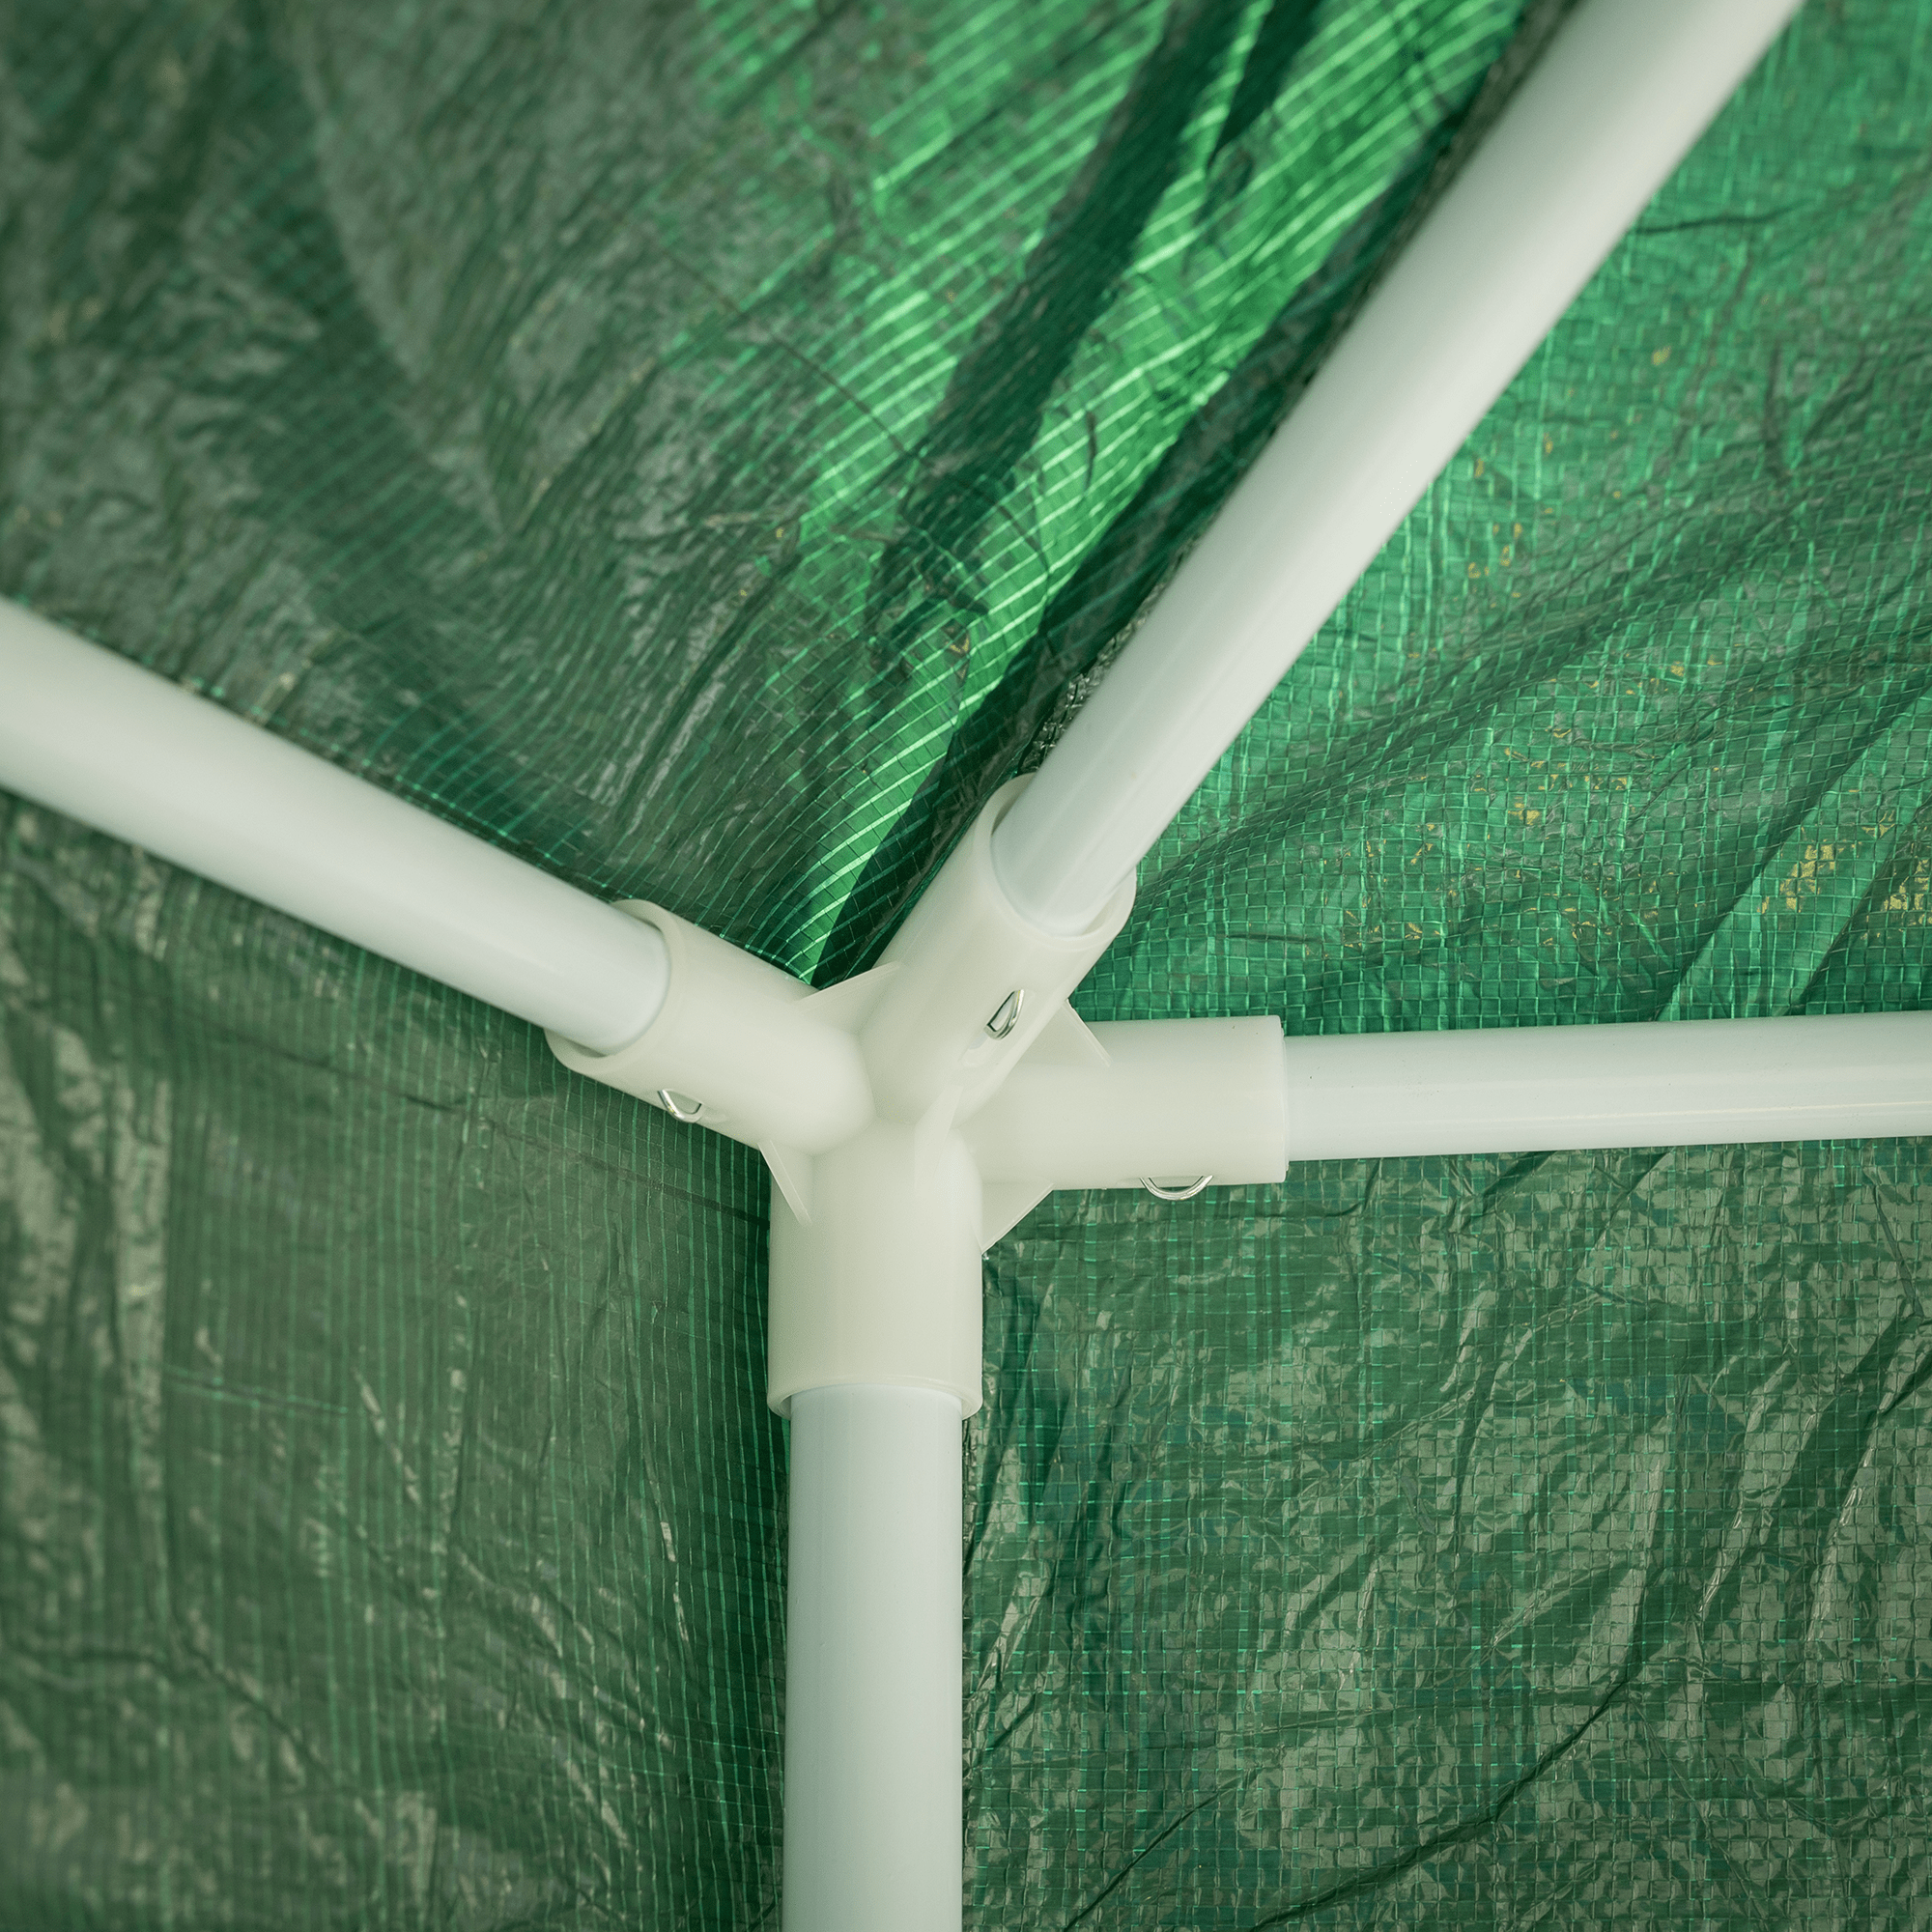 Pavilion cort pentru grădină, 3,9x2,5x3,9m, verde / alb, RINGE TIP 1 6 laturi